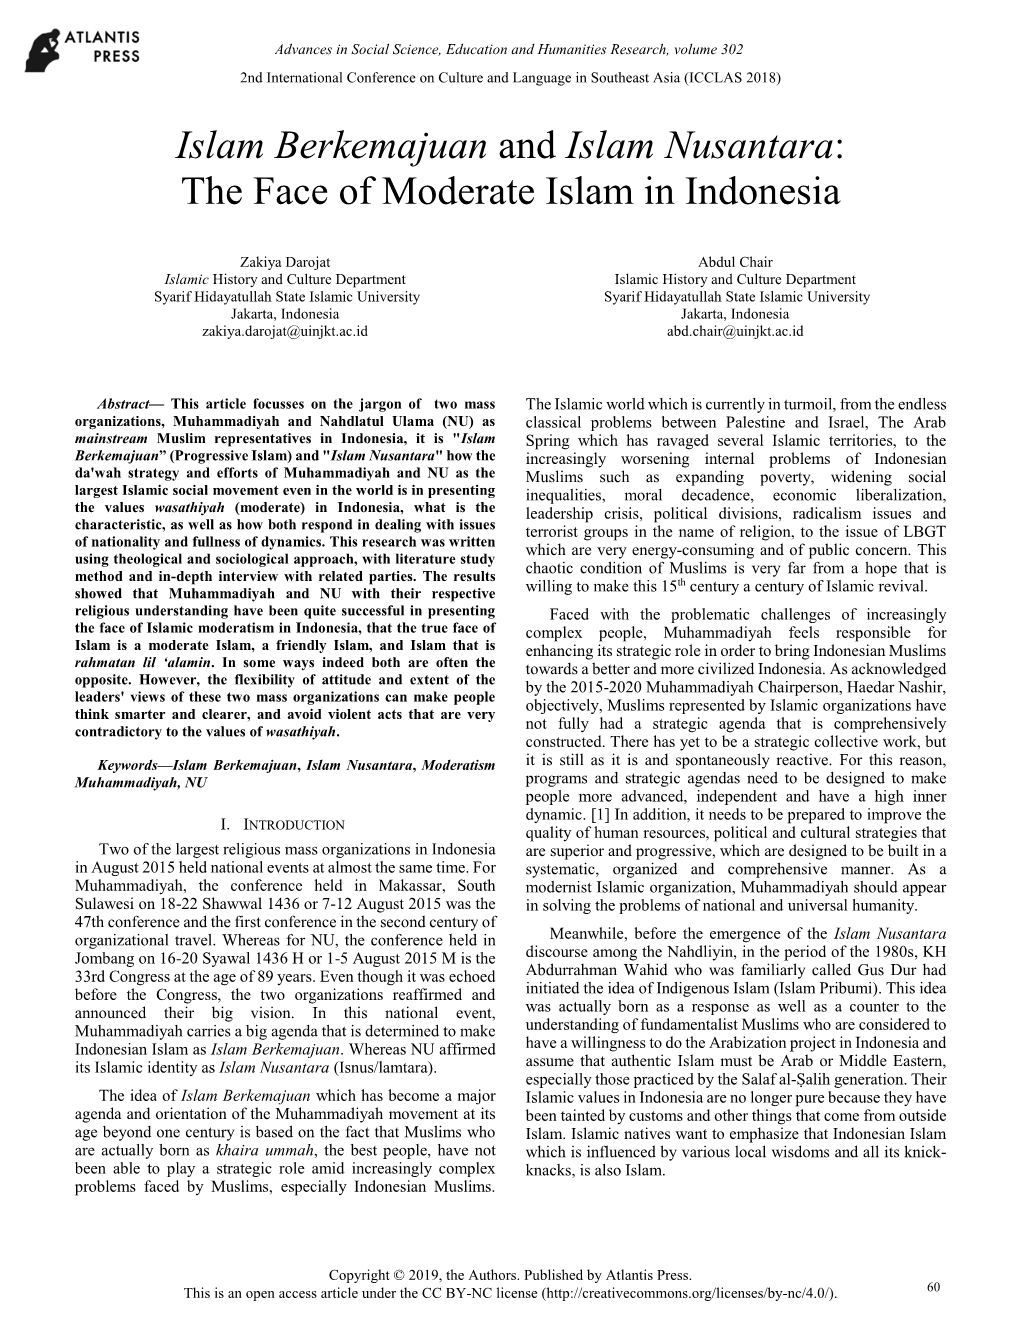 Islam Berkemajuan and Islam Nusantara: the Face of Moderate Islam in Indonesia